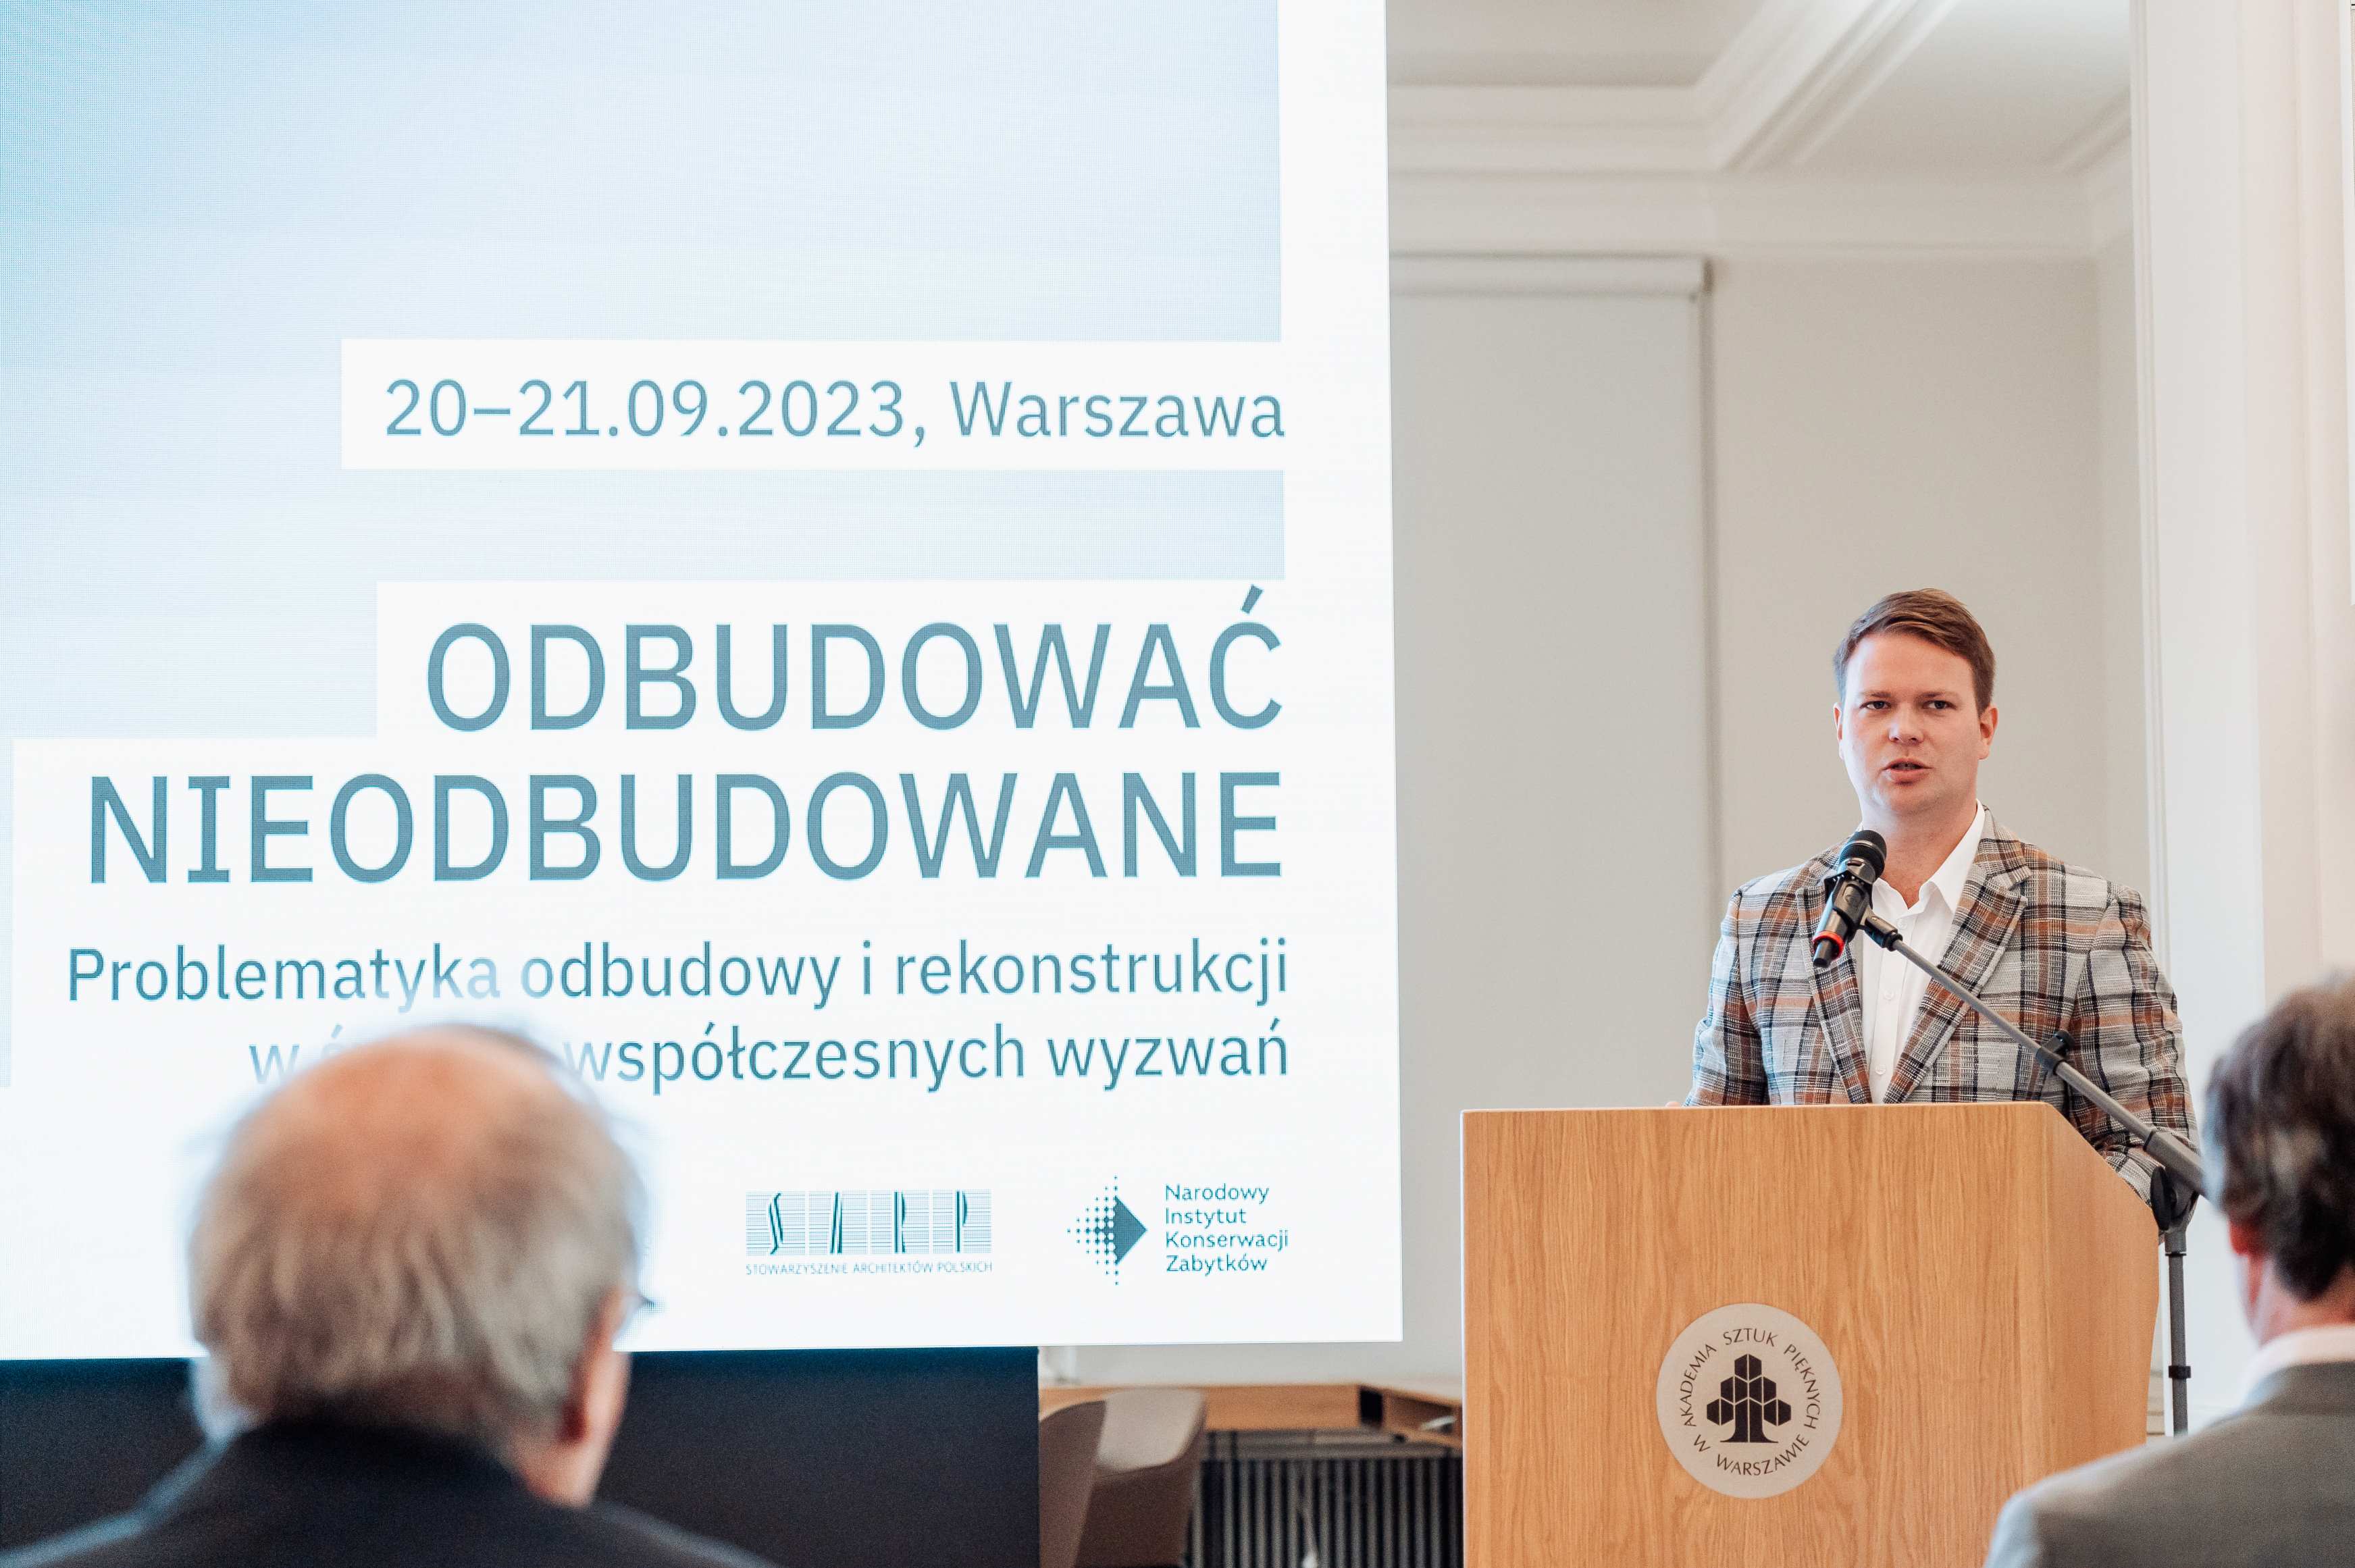 Prezes Jan Kowalski otwiera konferencję Odbudować nieodbudowane. W tle ekran z tytułem konferencji.